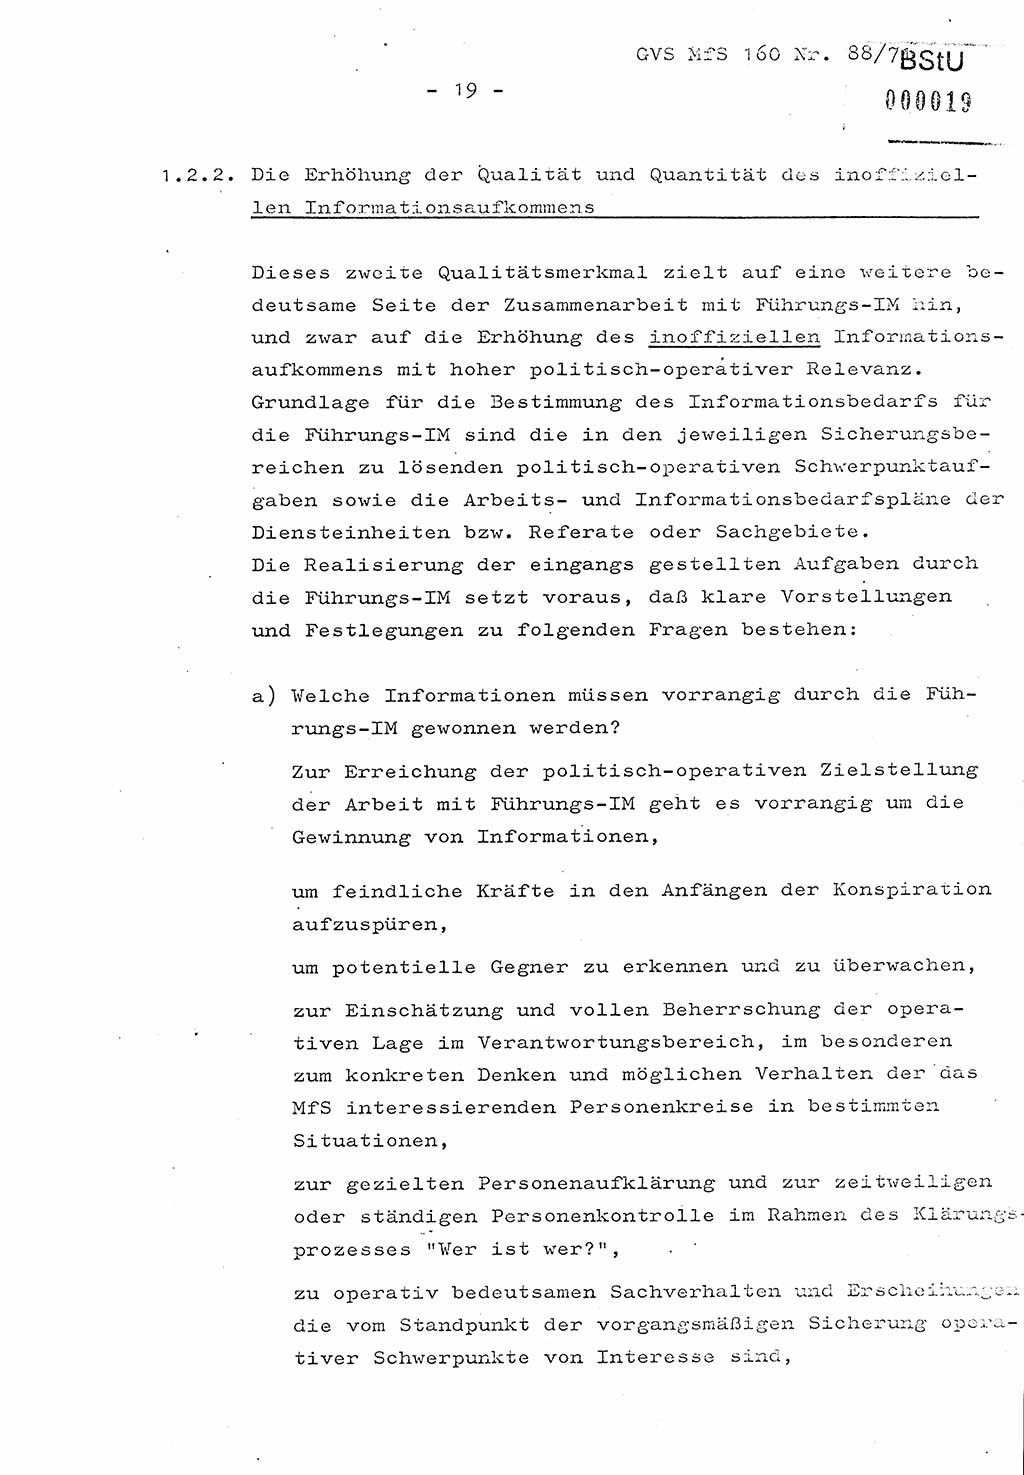 Dissertation Oberstleutnant Josef Schwarz (BV Schwerin), Major Fritz Amm (JHS), Hauptmann Peter Gräßler (JHS), Ministerium für Staatssicherheit (MfS) [Deutsche Demokratische Republik (DDR)], Juristische Hochschule (JHS), Geheime Verschlußsache (GVS) 160-88/71, Potsdam 1972, Seite 19 (Diss. MfS DDR JHS GVS 160-88/71 1972, S. 19)